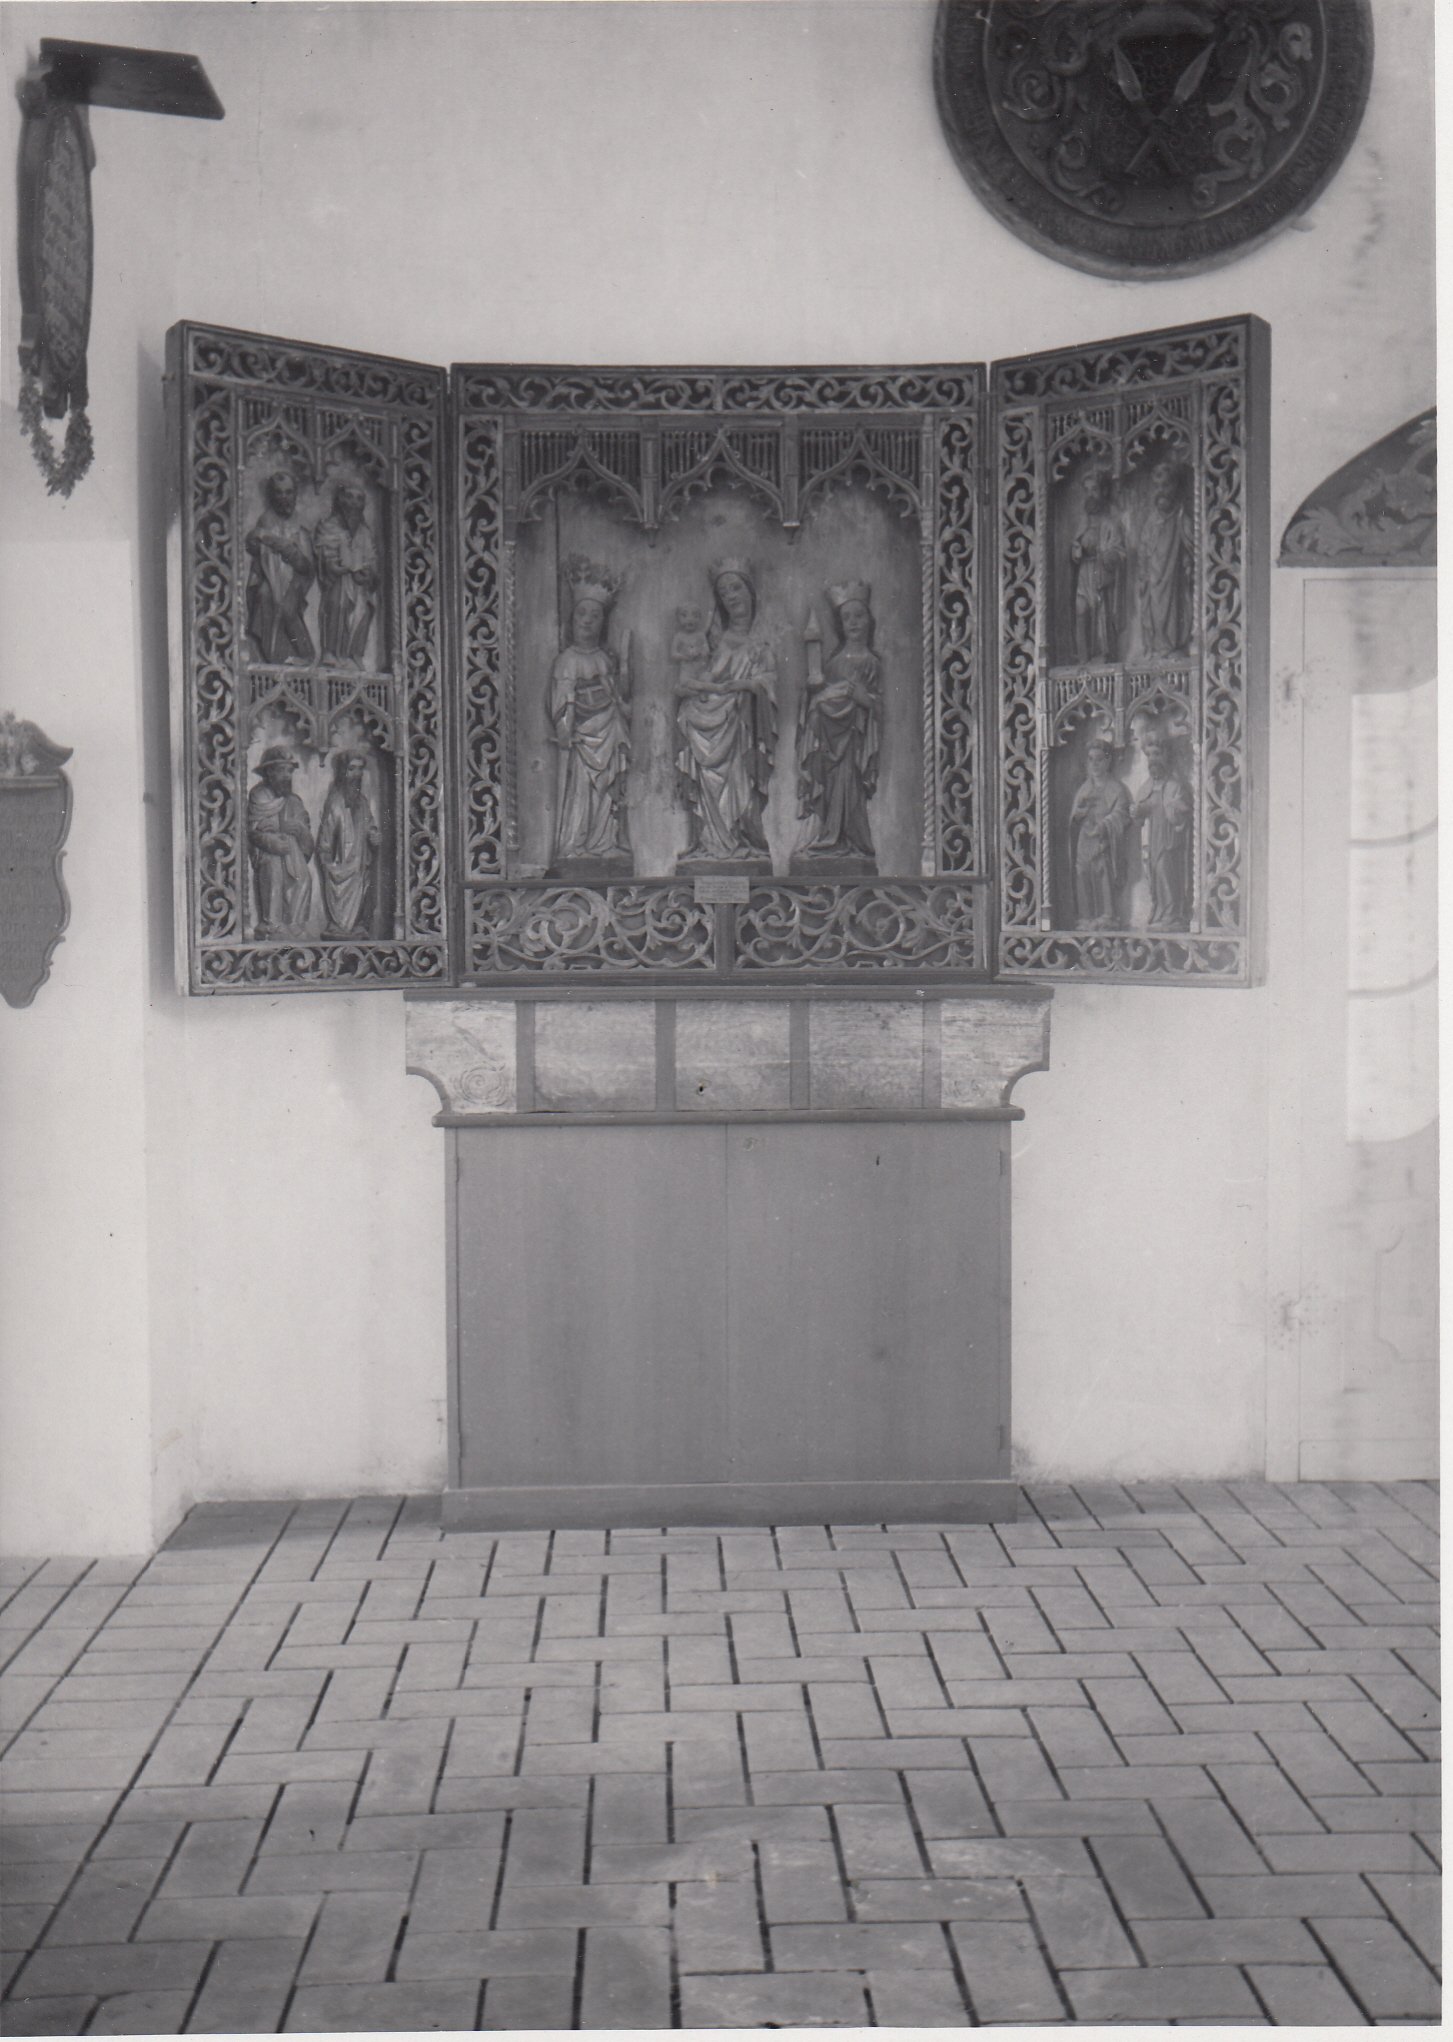 2522: Flügel des Altarretabels der Kirche zu Carzig (Museumsverband des Landes Brandenburg e.V. CC BY-NC-SA)